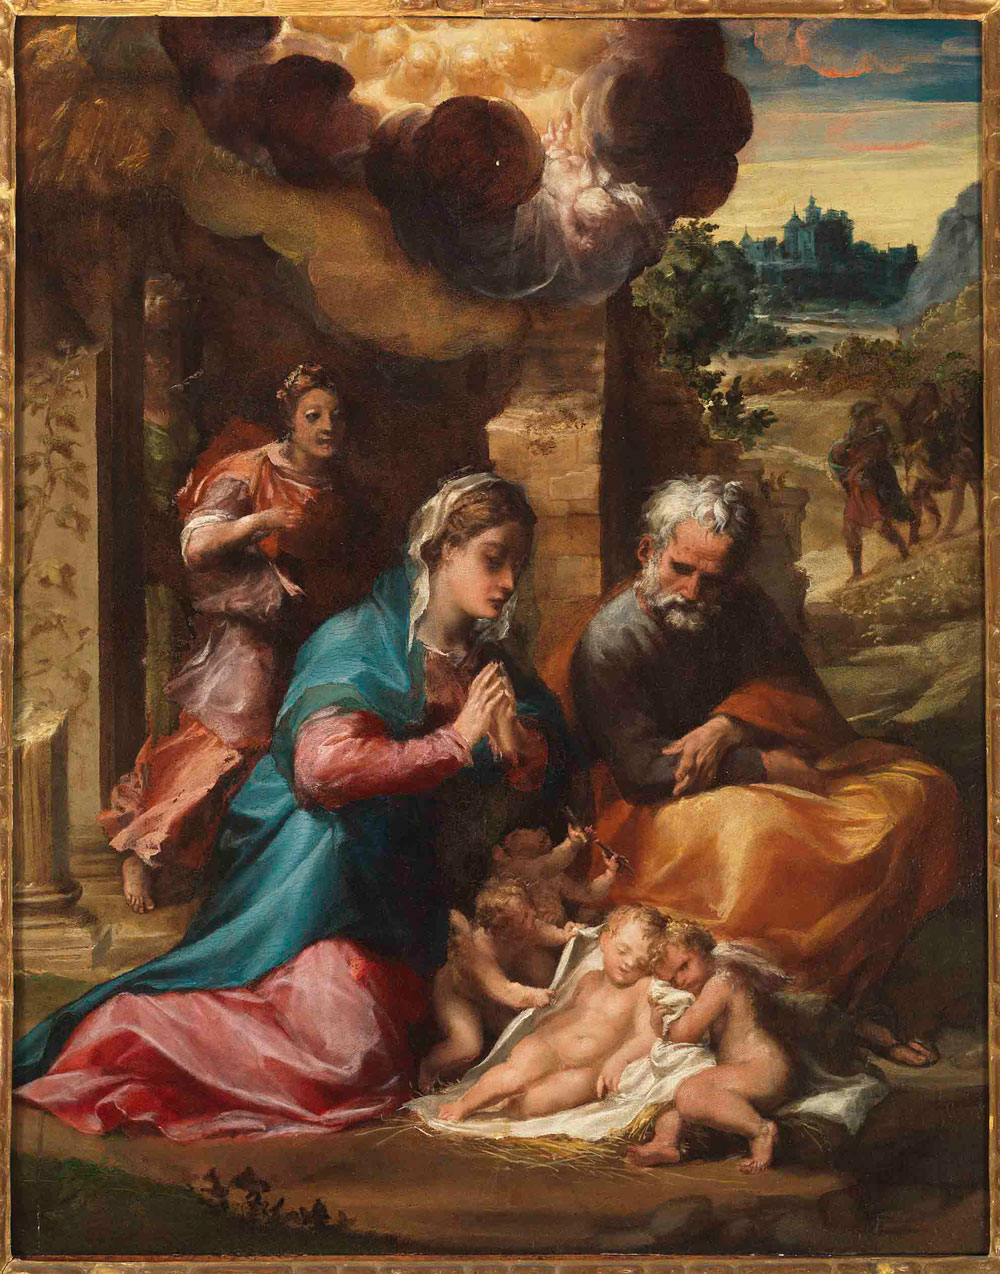 L'Adorazione del Bambino restaurata di Michelangelo Anselmi in mostra a Milano